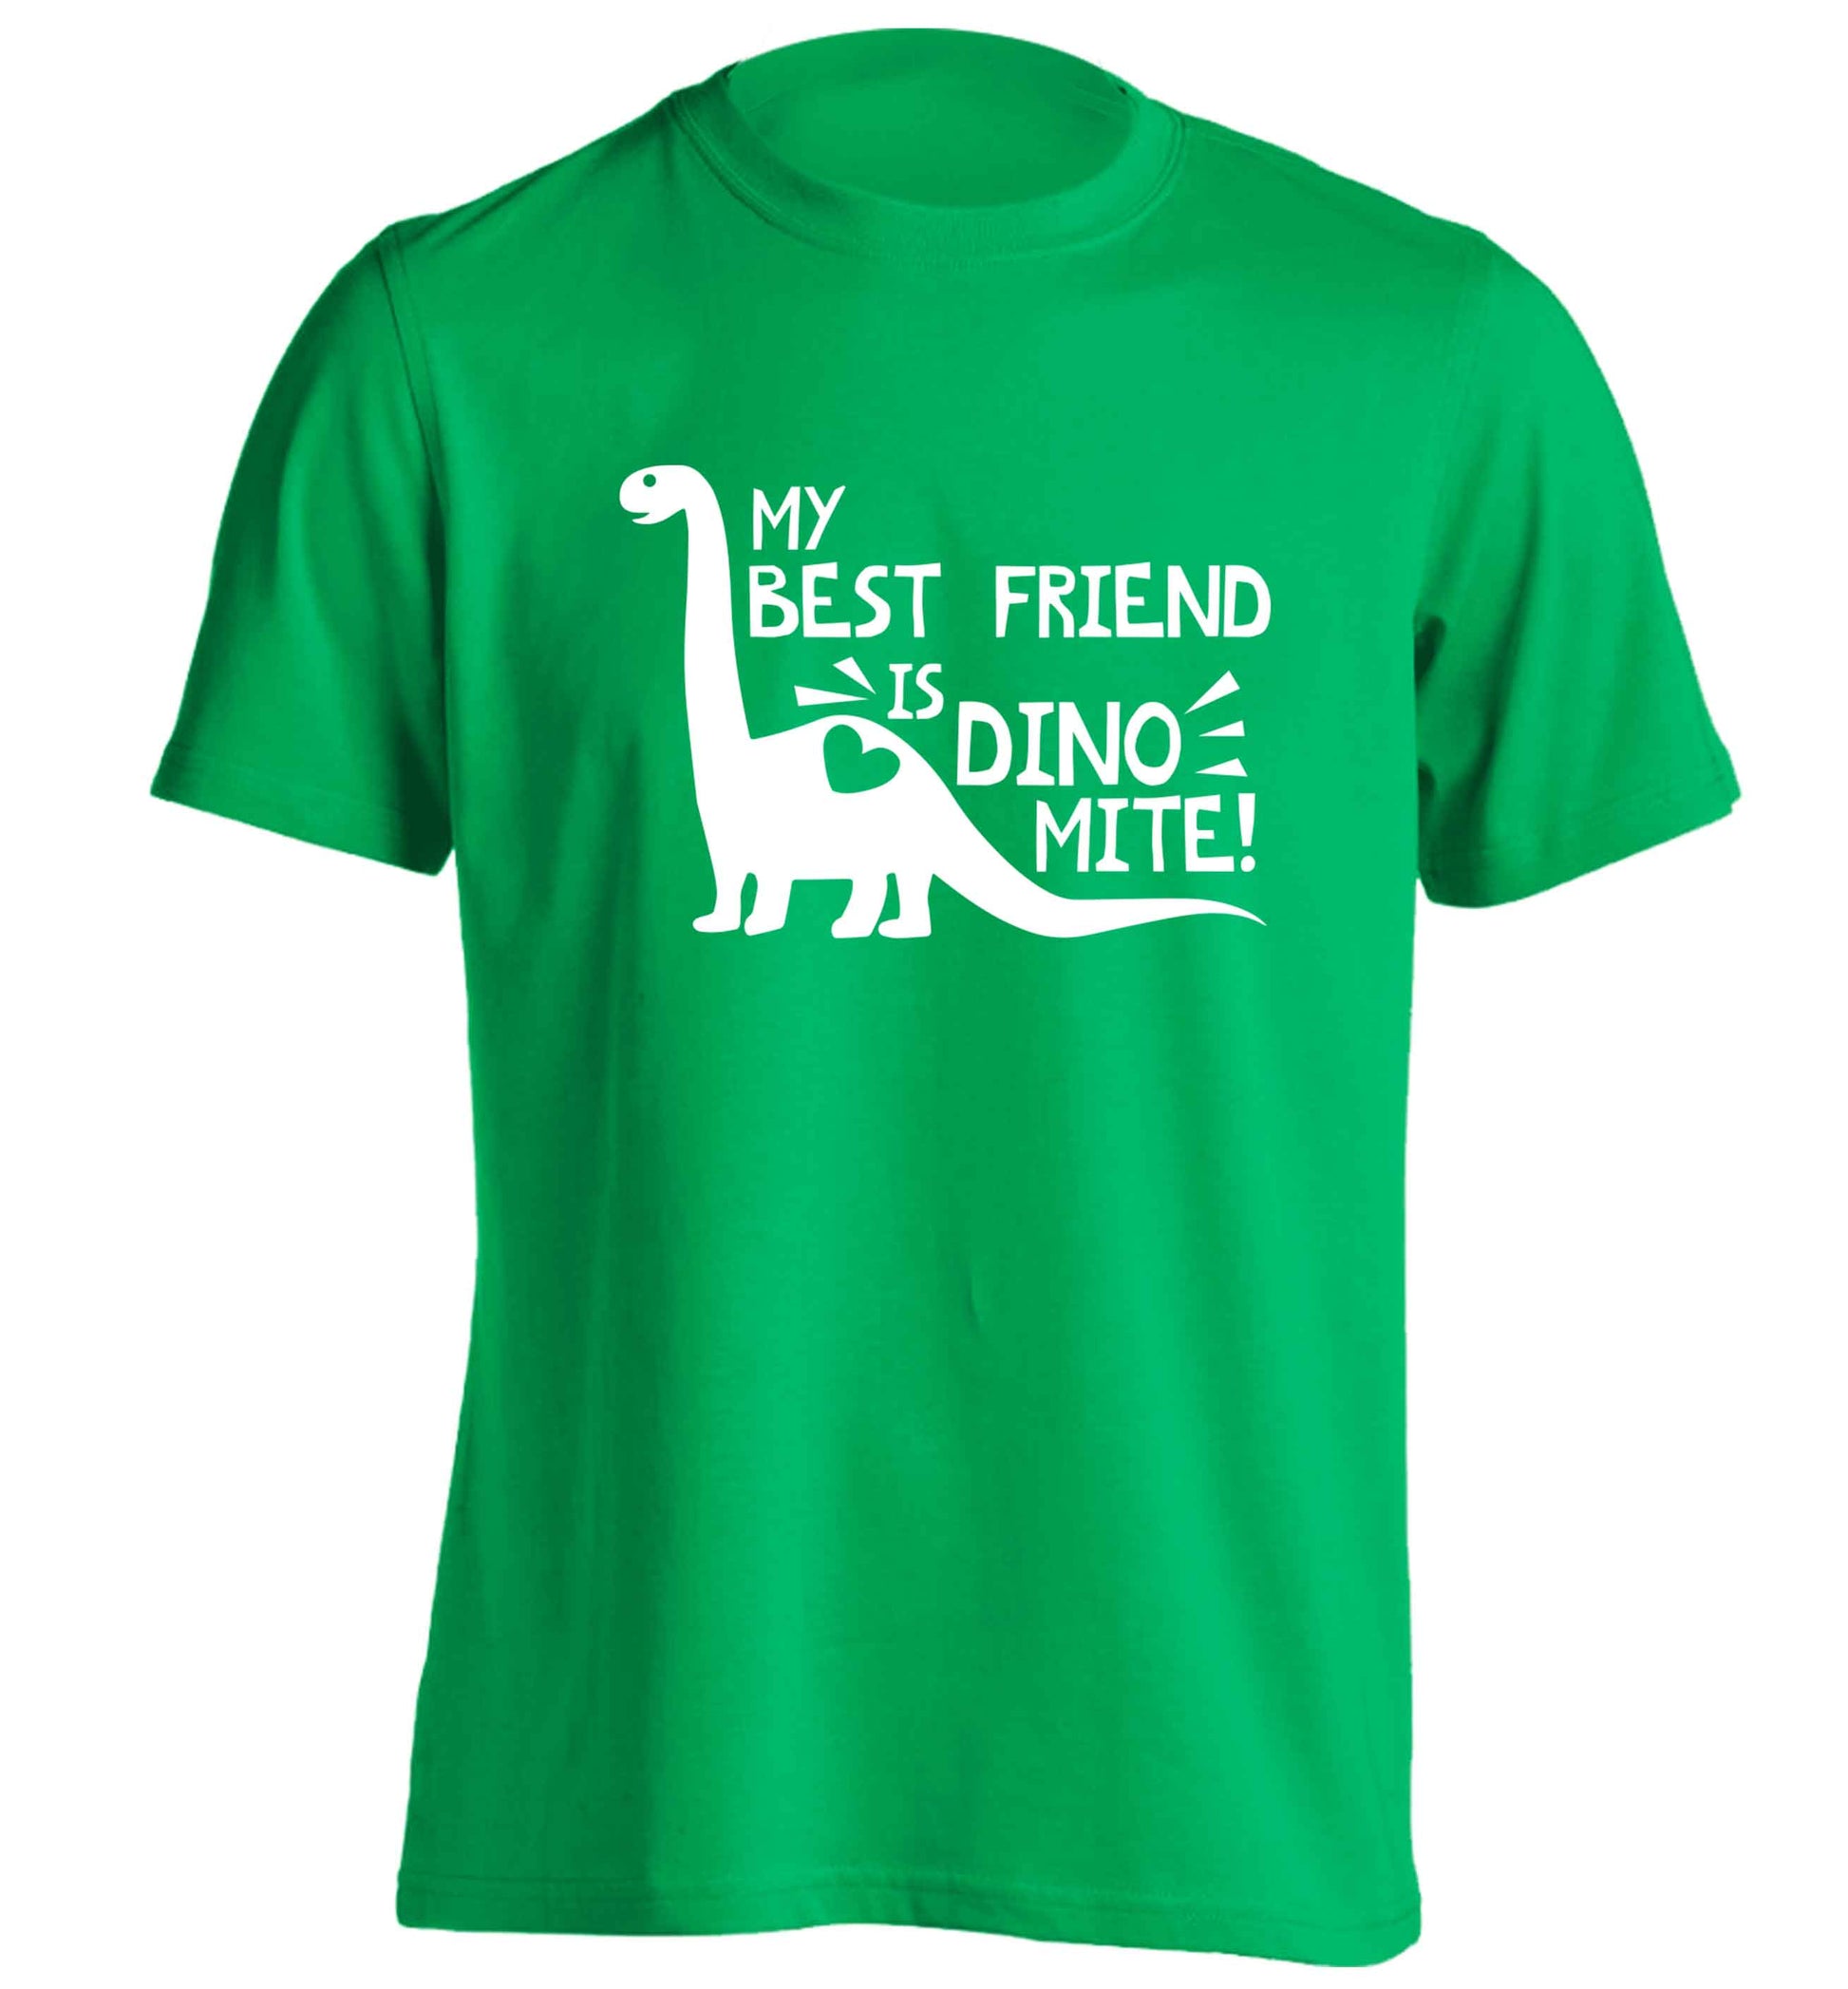 My best friend is dinomite! adults unisex green Tshirt 2XL